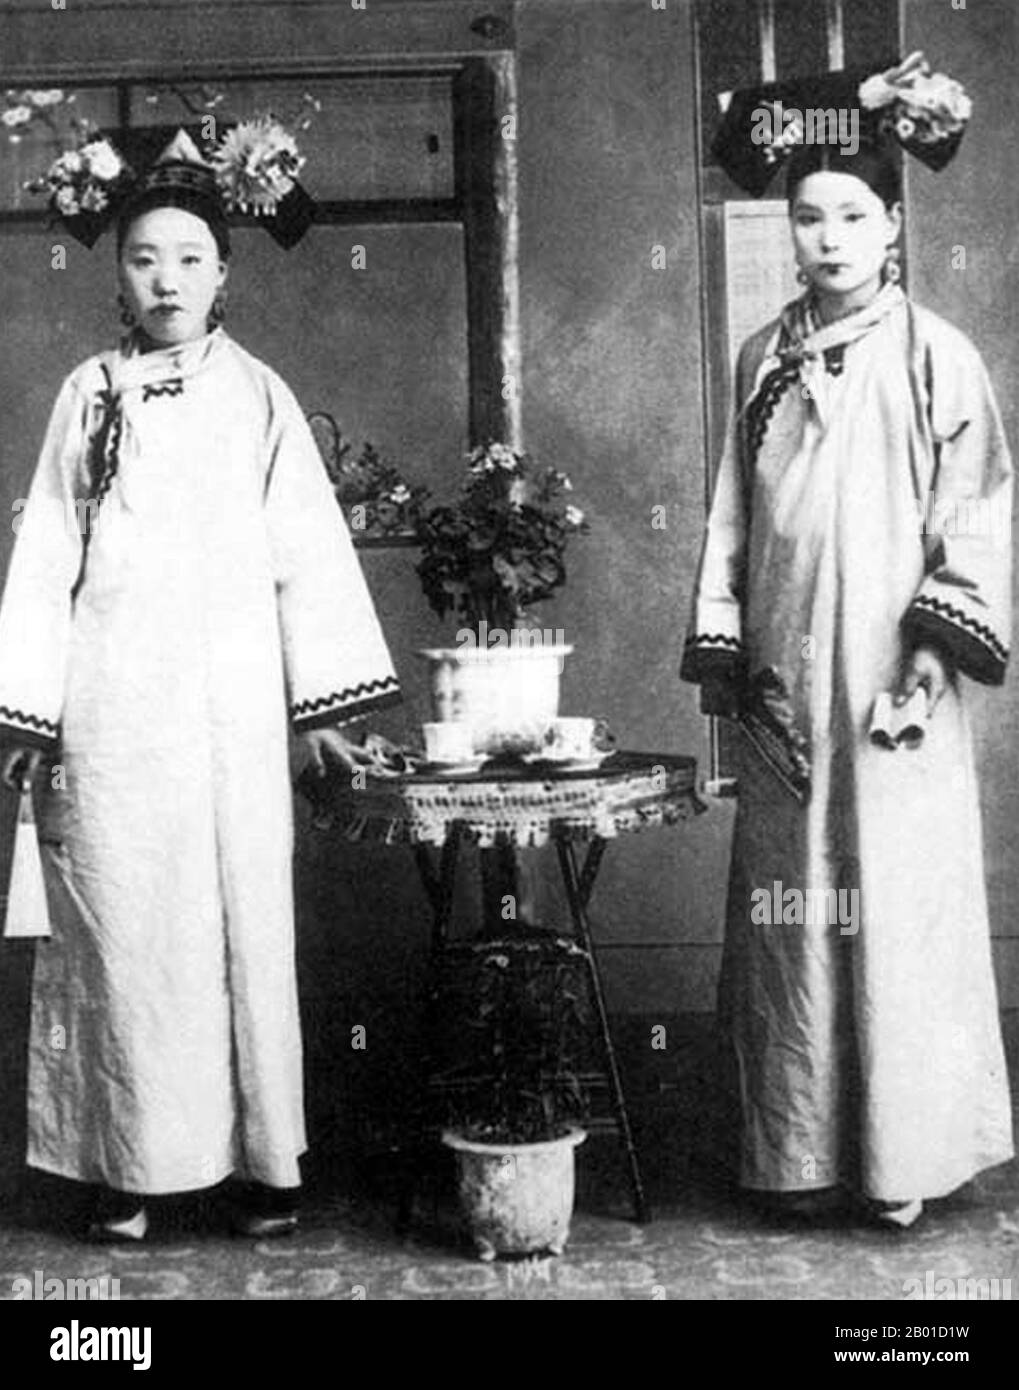 Chine : Manchu Mesdames à la Cour impériale de Qing à Beijing, c. 1890. Les femmes Manchu de la Cité interdite ou Gugong à Beijing posent pour une photographie pendant la dynastie Manchu Qing (1644-1911). Ils portent des robes élaborées et chères. Leurs visages sont blanchis avec de la poudre, et leur rouge à lèvres est appliqué dans une bande étroite à travers le centre de leurs lèvres suivant la mode du temps. Banque D'Images